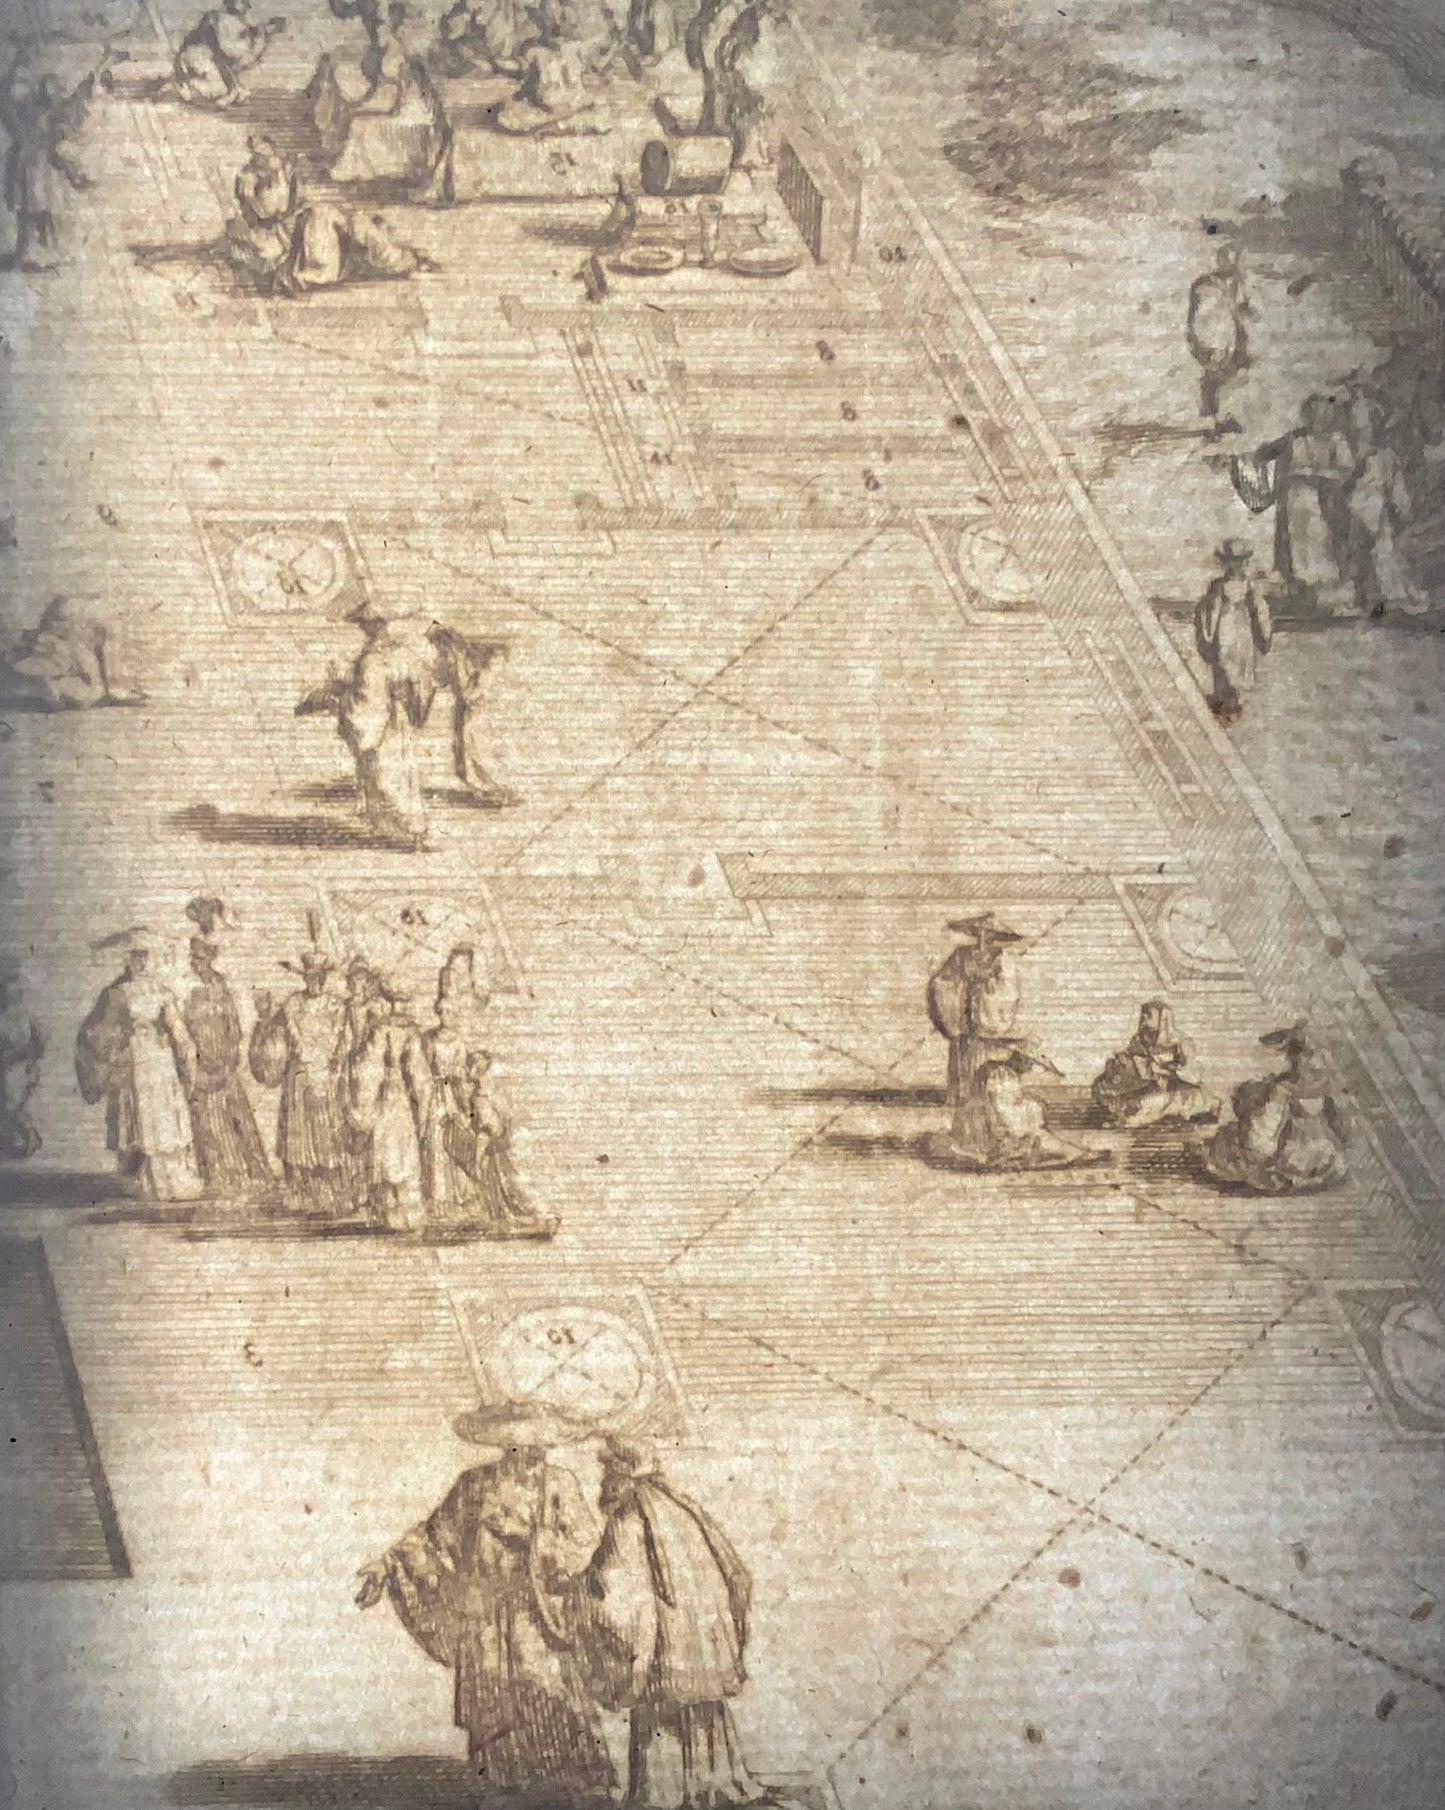 1728 B. Picart, Grande Pagode de Chine, gravure double in-folio, topographie étrangère